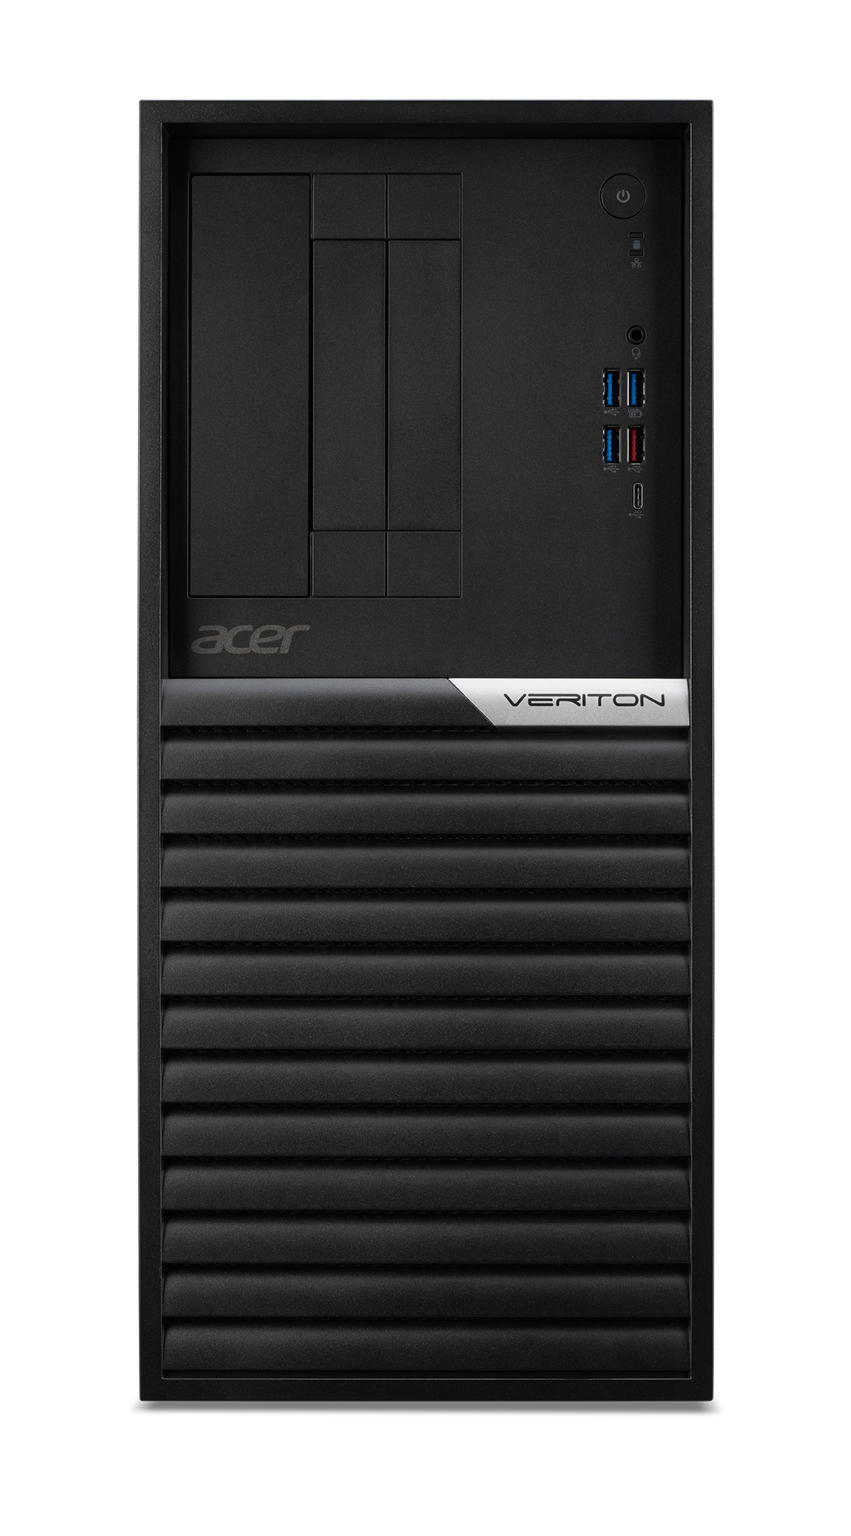 Aanbieding Desktops. Acer Veriton Mini K4690G I75516 Pro PC